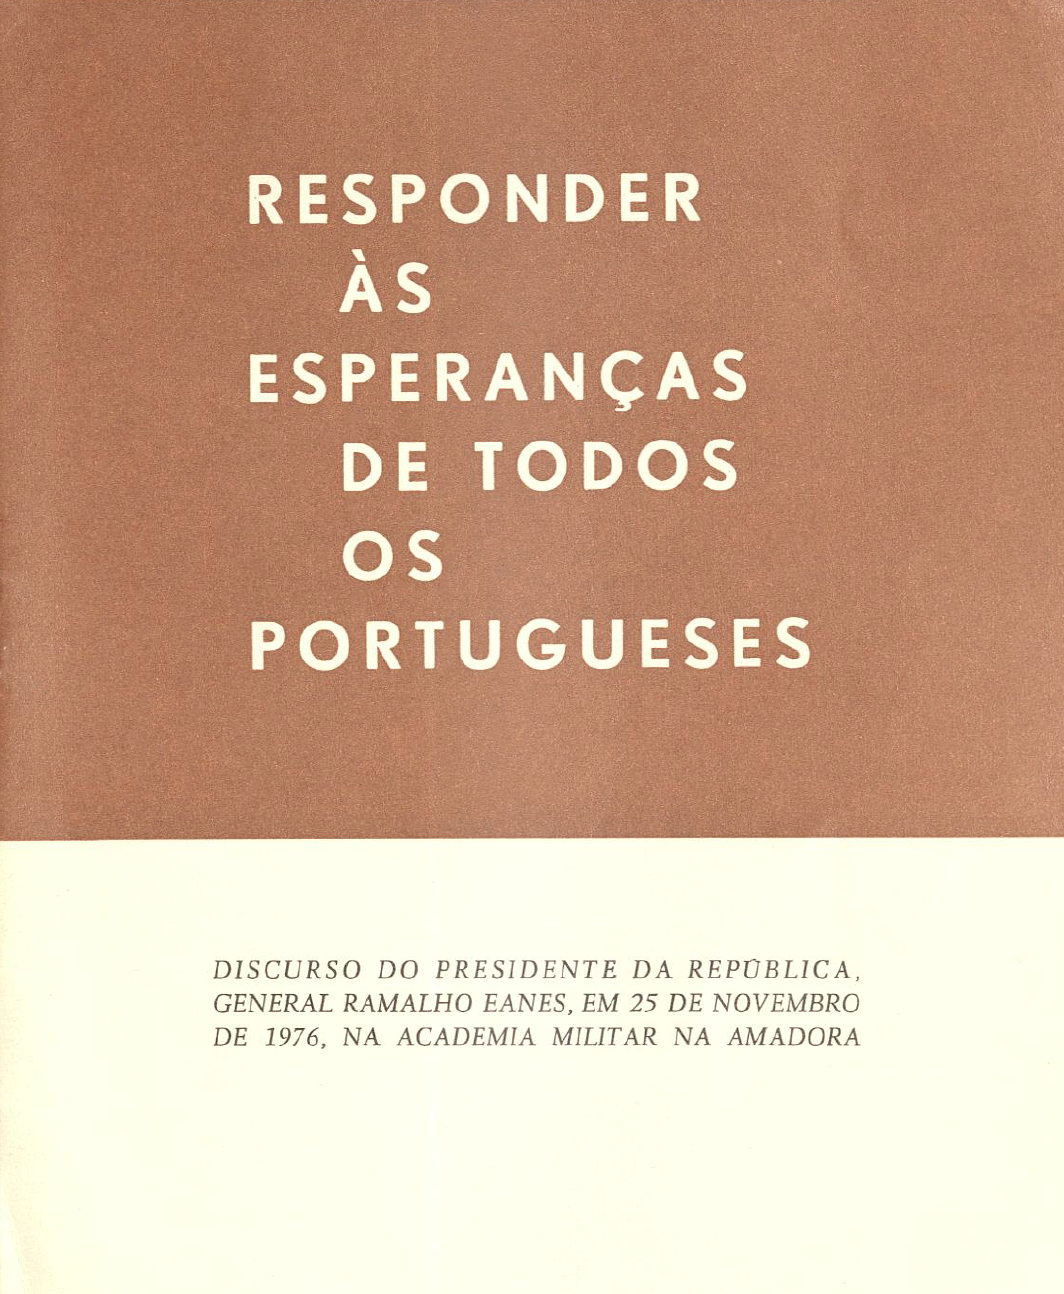 Responder às esperanças de todos os portugueses